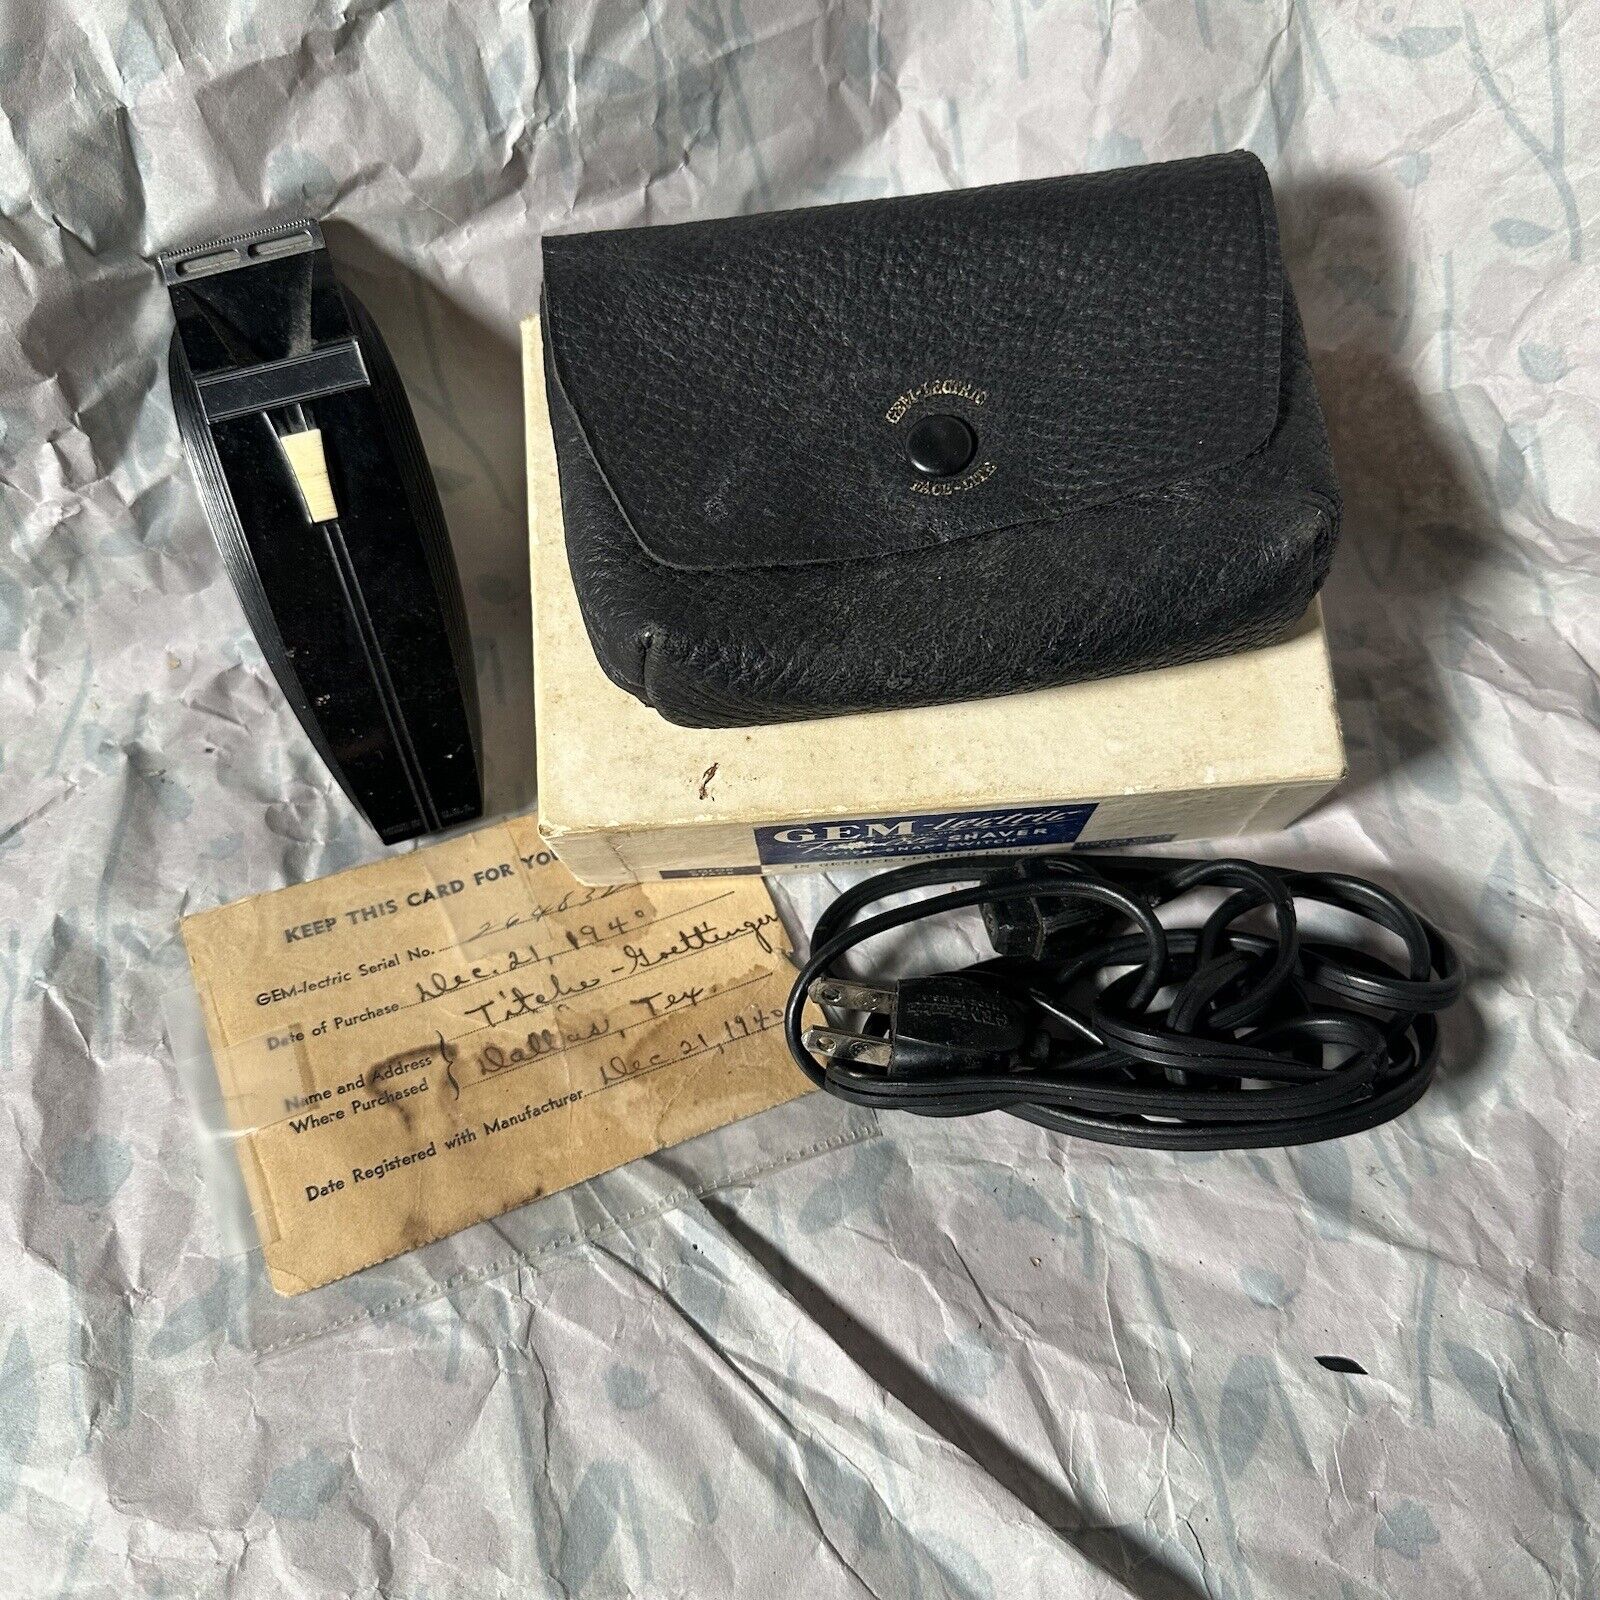 Vintage Gem-lectric Shaver  Sold Dec 1940 Leather Case, Working